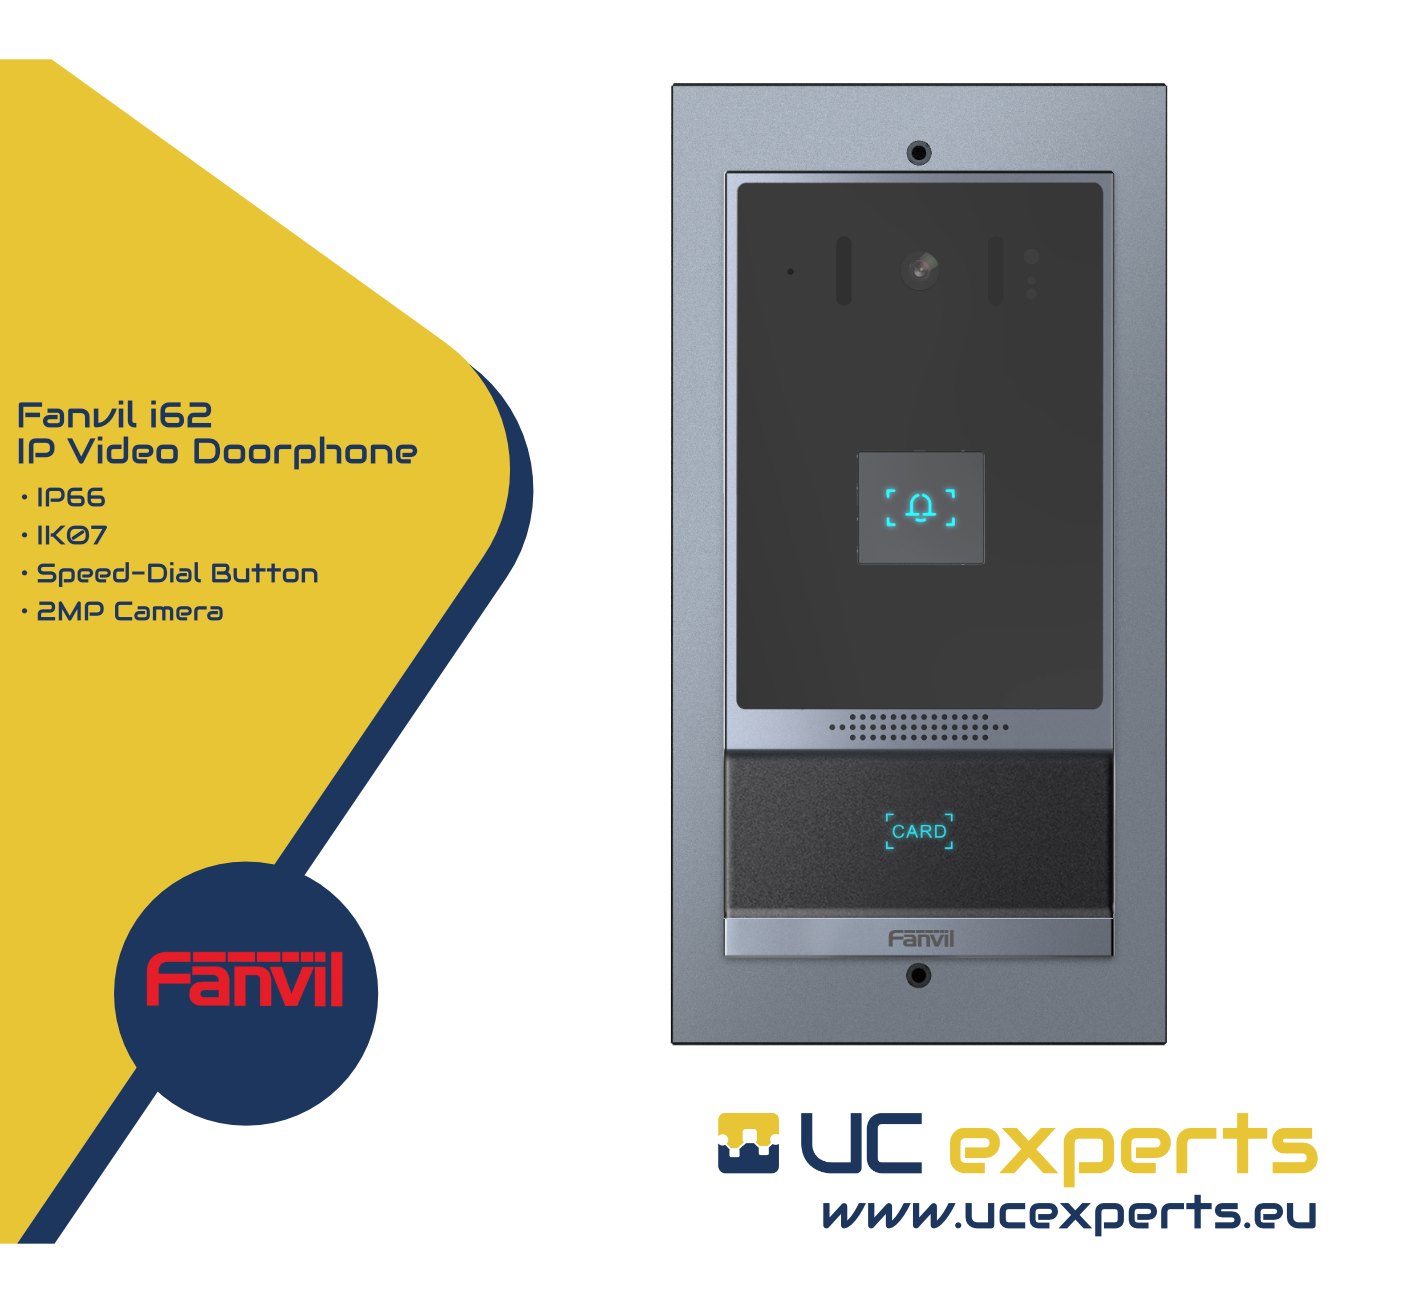 New Fanvil i62 doorphone